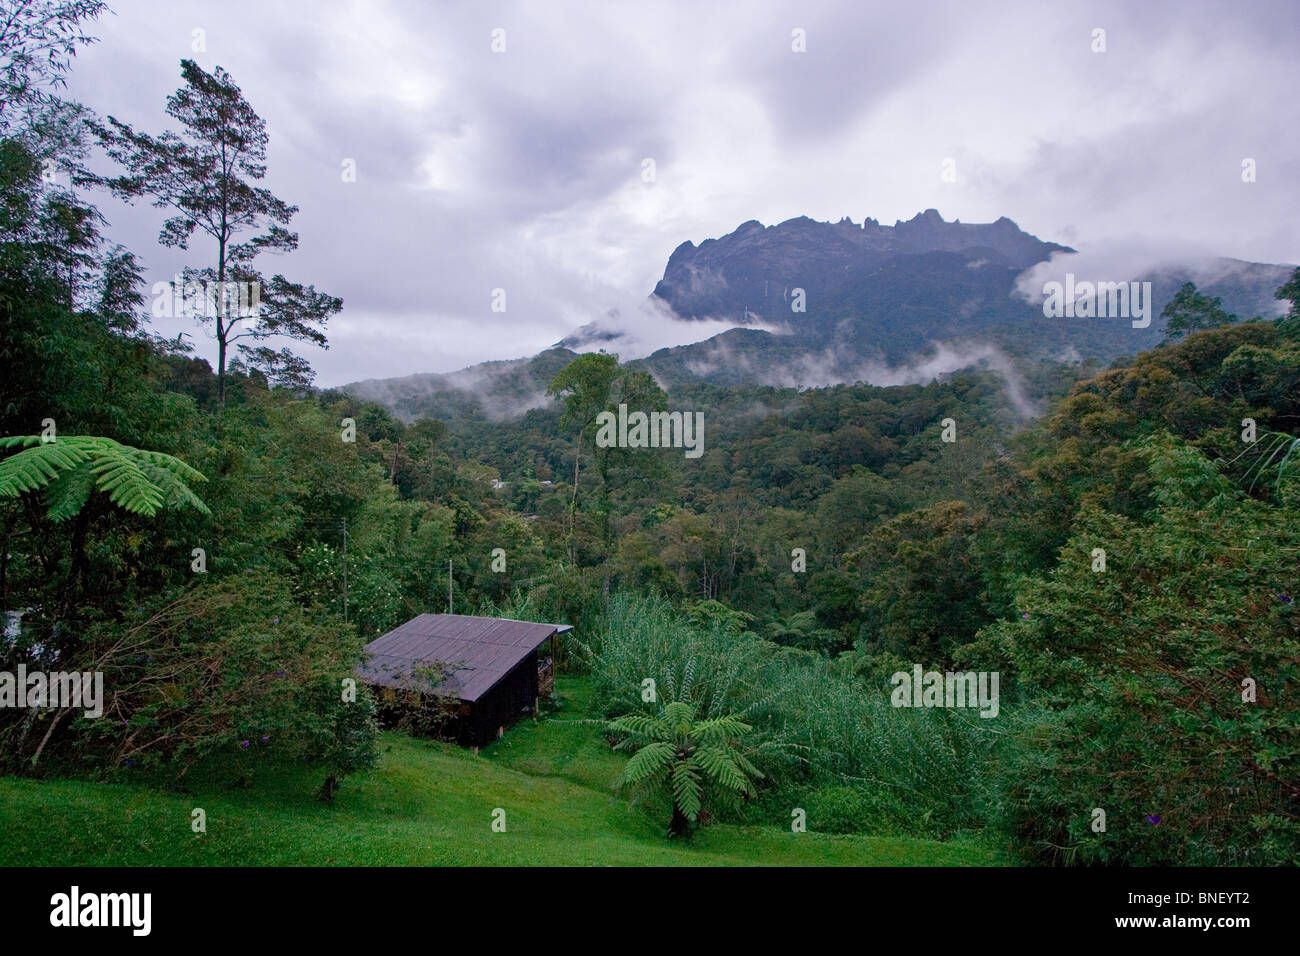 View of Mount Kinabalu, Sabah, Malaysia Stock Photo